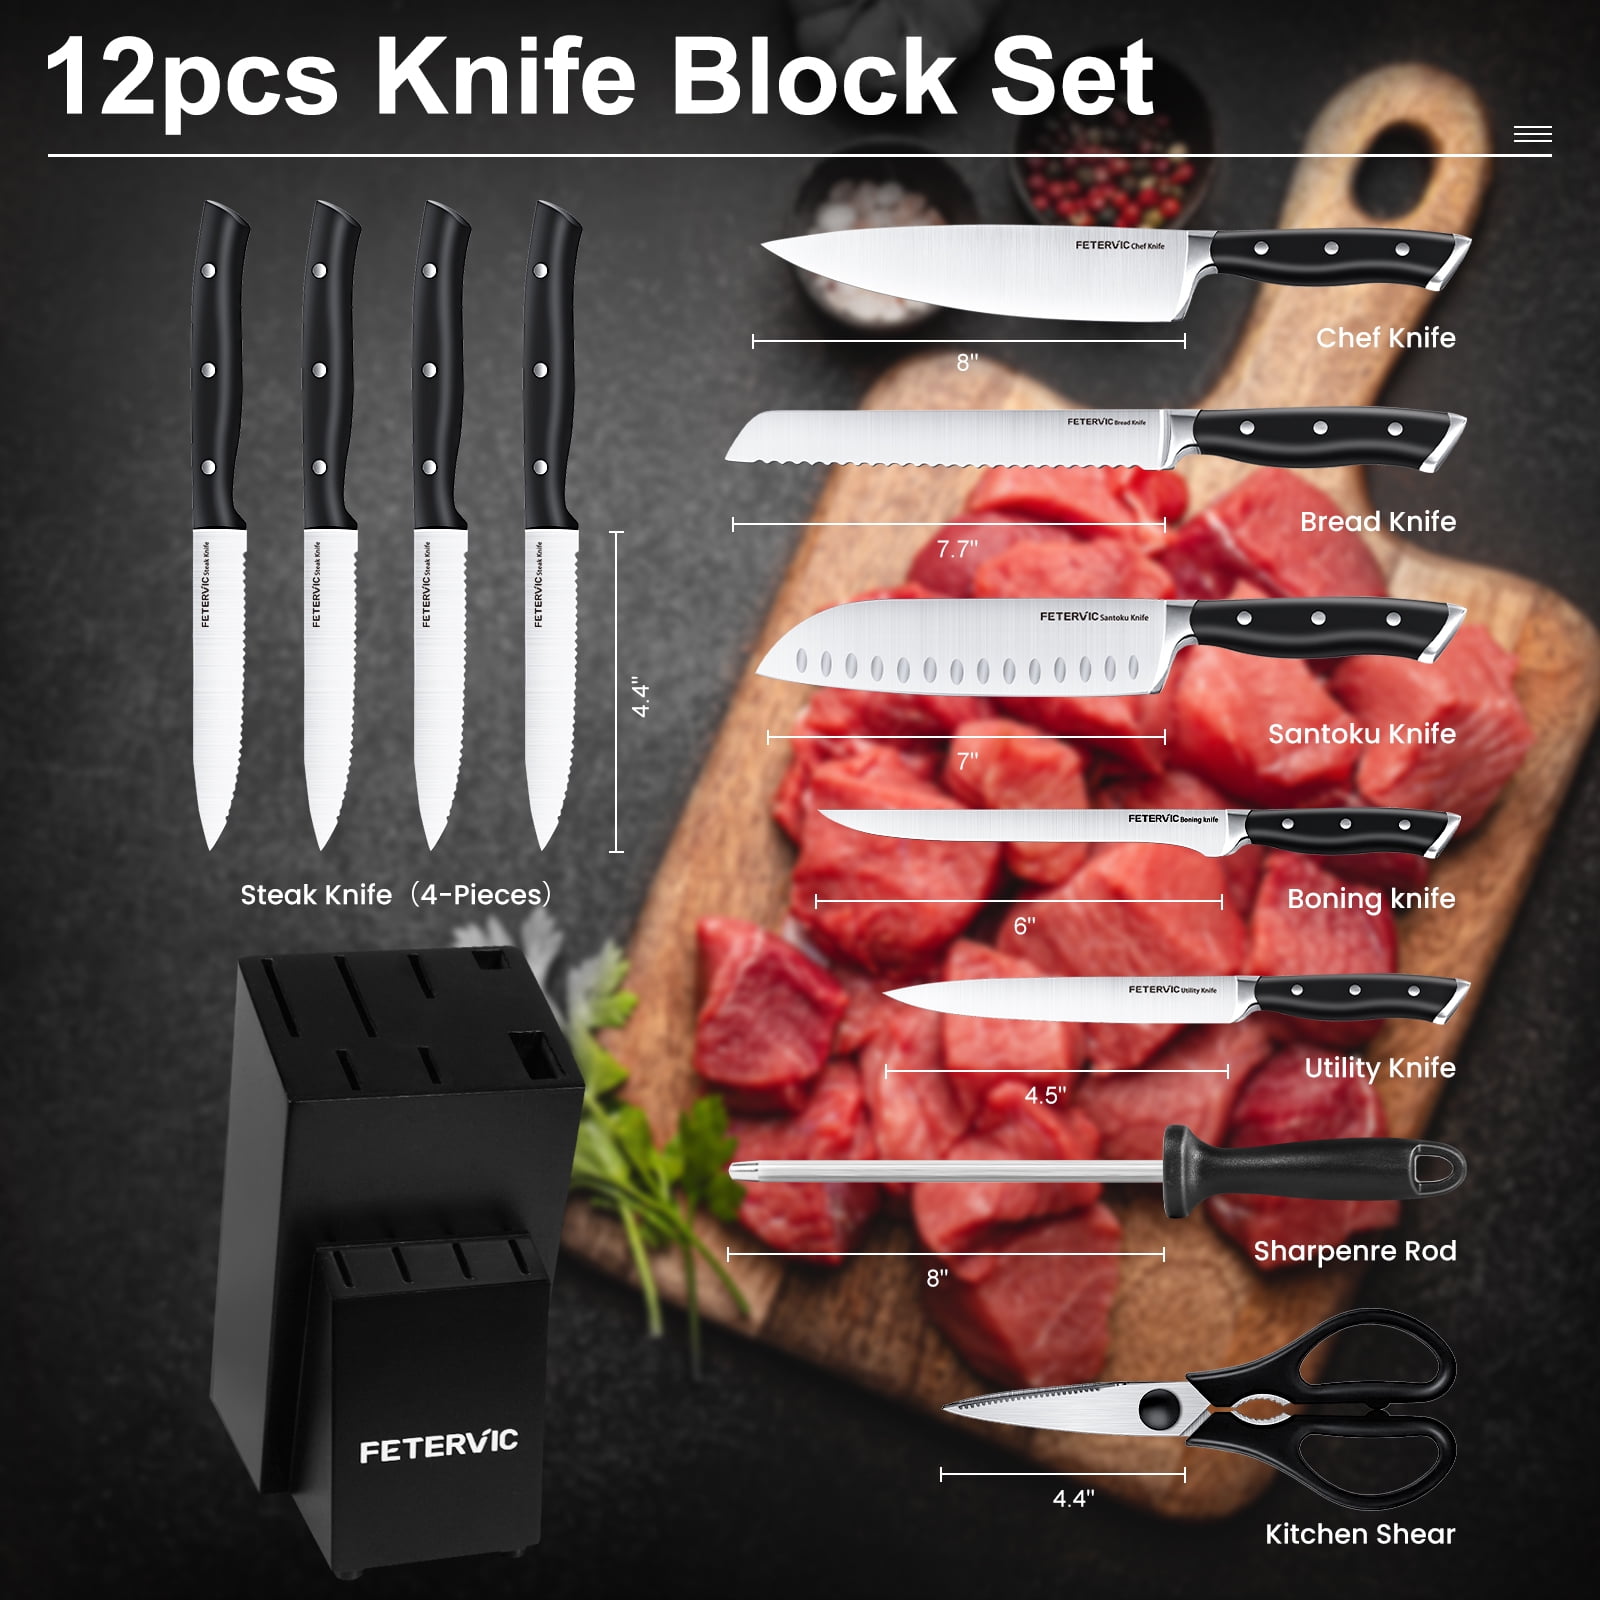 Fetervic 12-Piece Knife Set for $36 - KS12